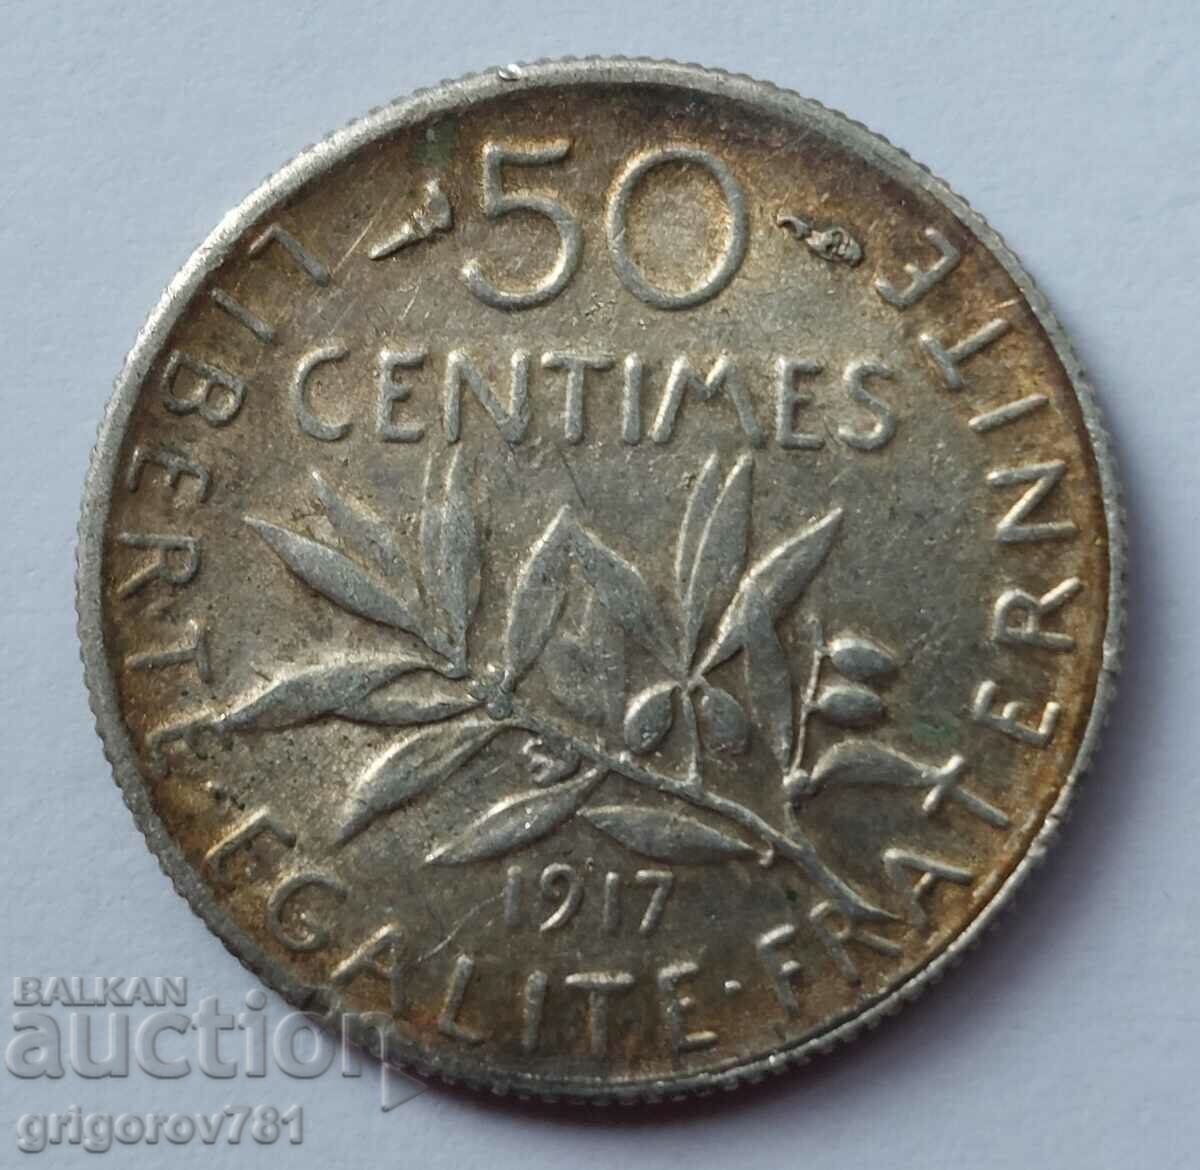 Ασημένιο 50 εκατοστά Γαλλία 1917 - ασημένιο νόμισμα №42